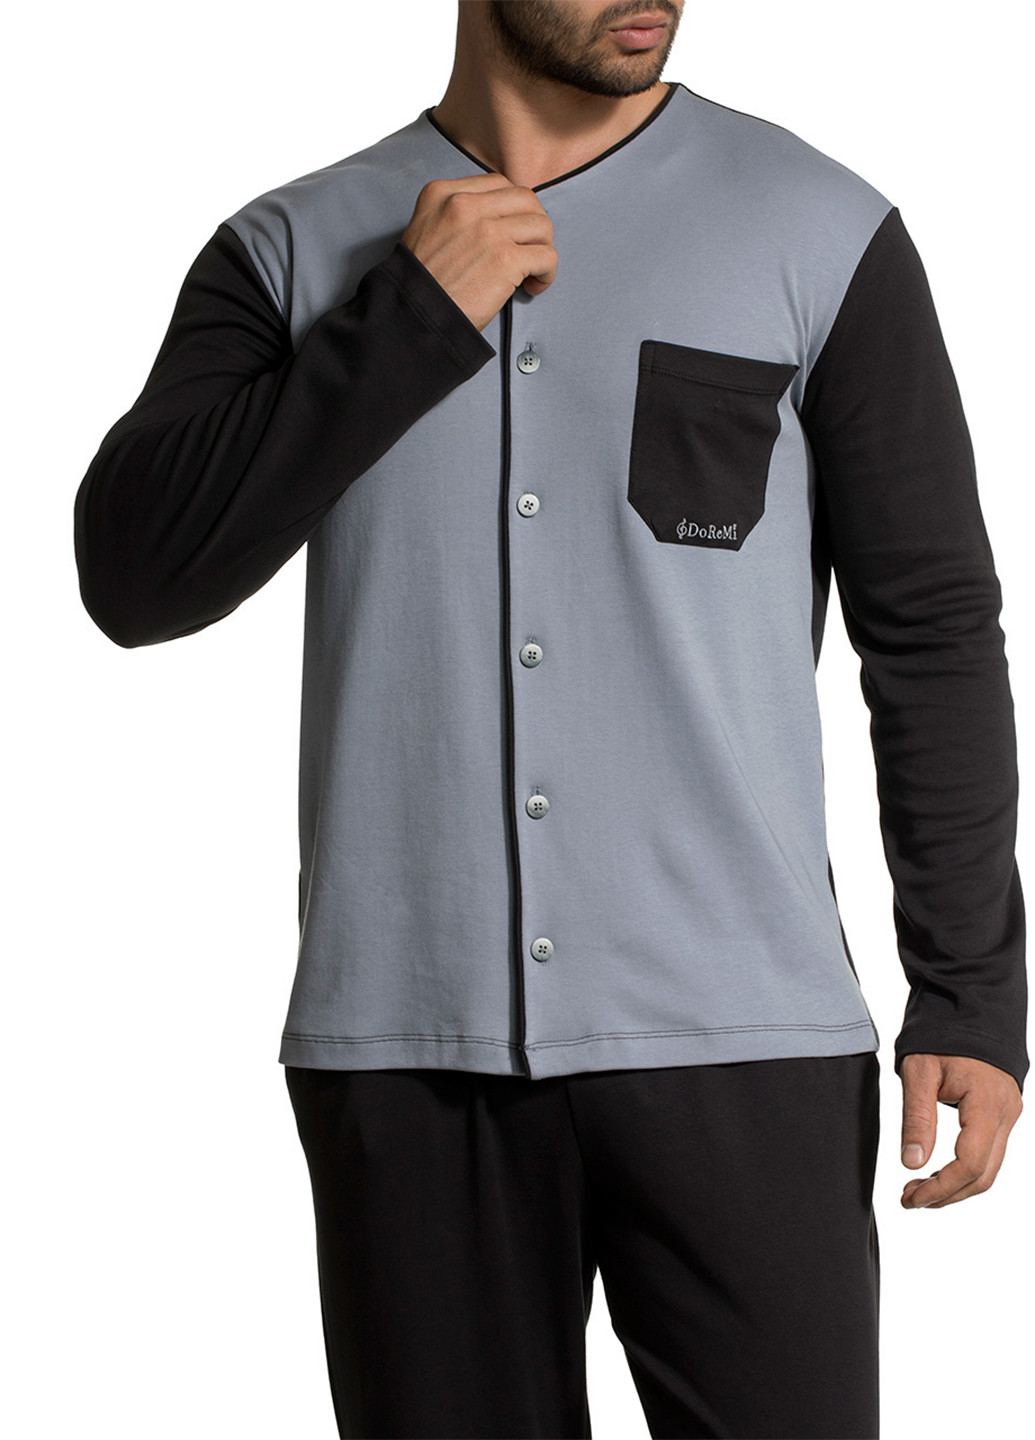 Пижама (кофта, брюки) DoReMi кофта + брюки однотонная чёрная домашняя хлопок